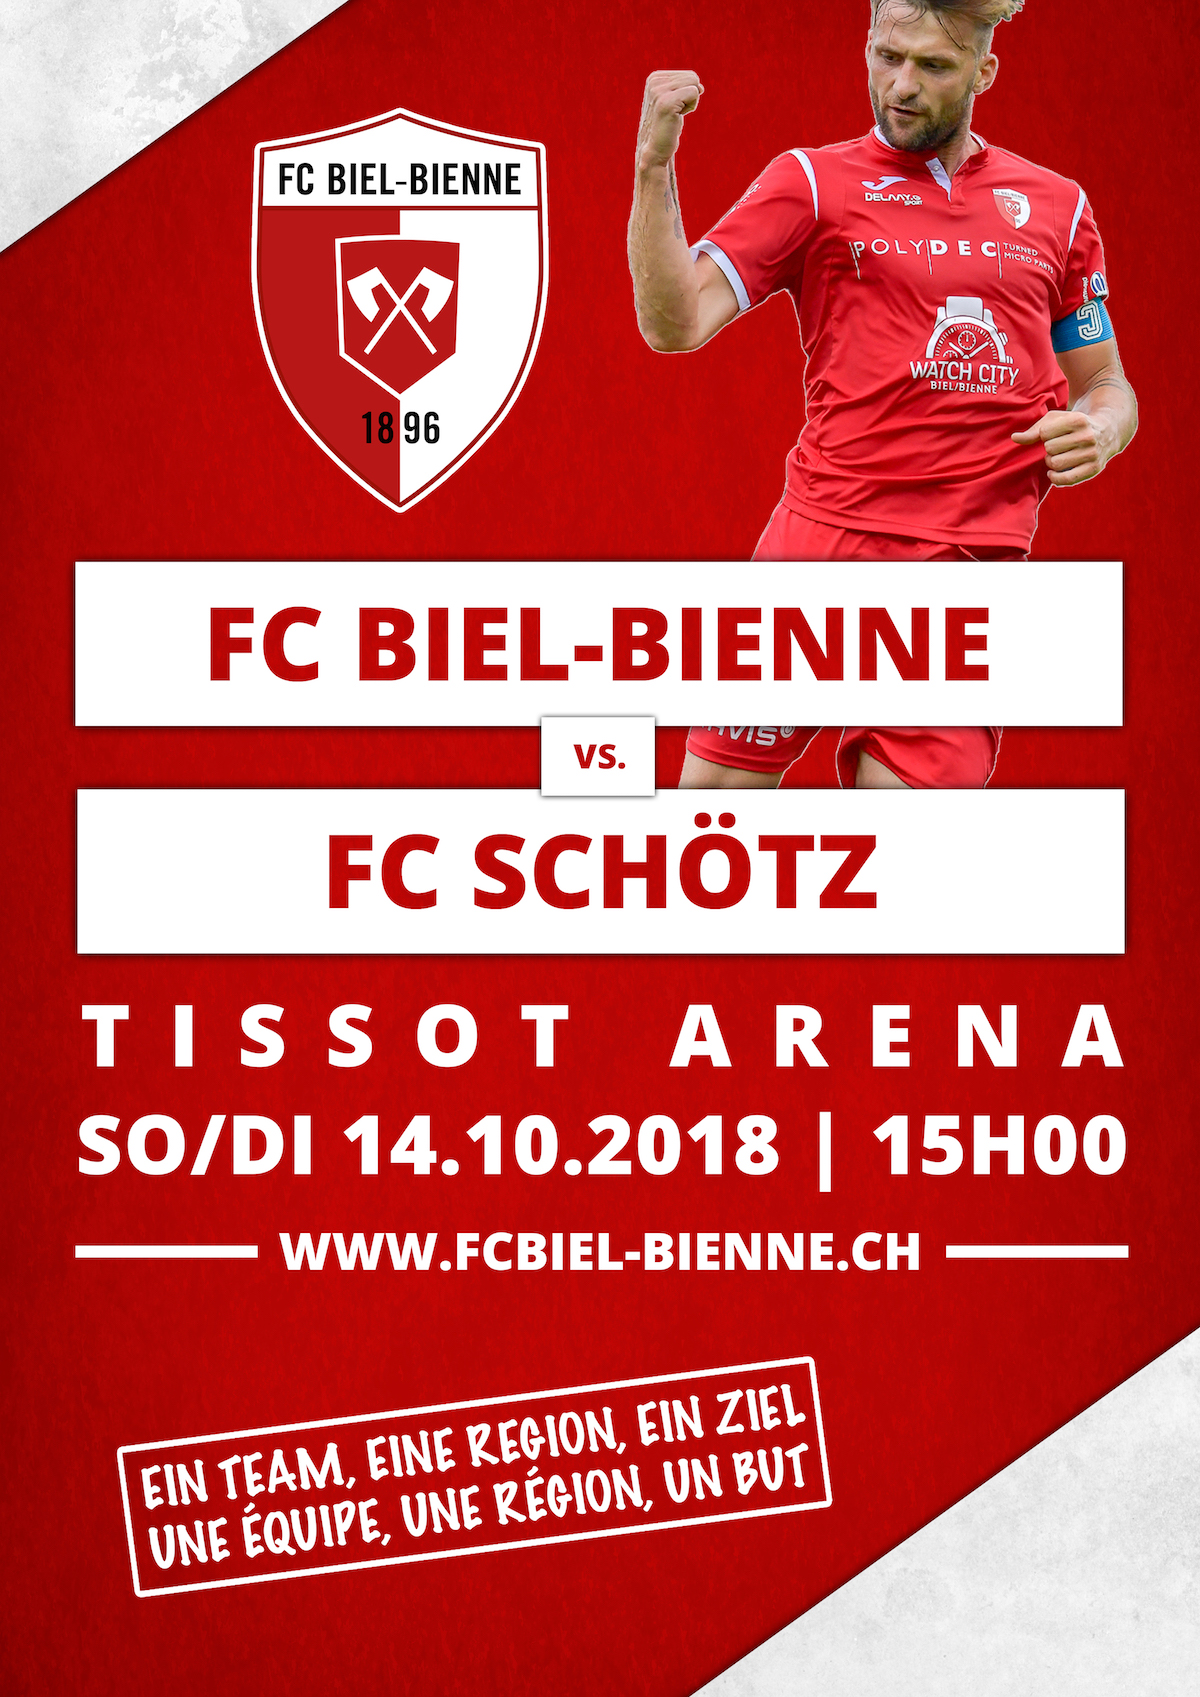 FC Biel-Bienne vs. FC Schötz